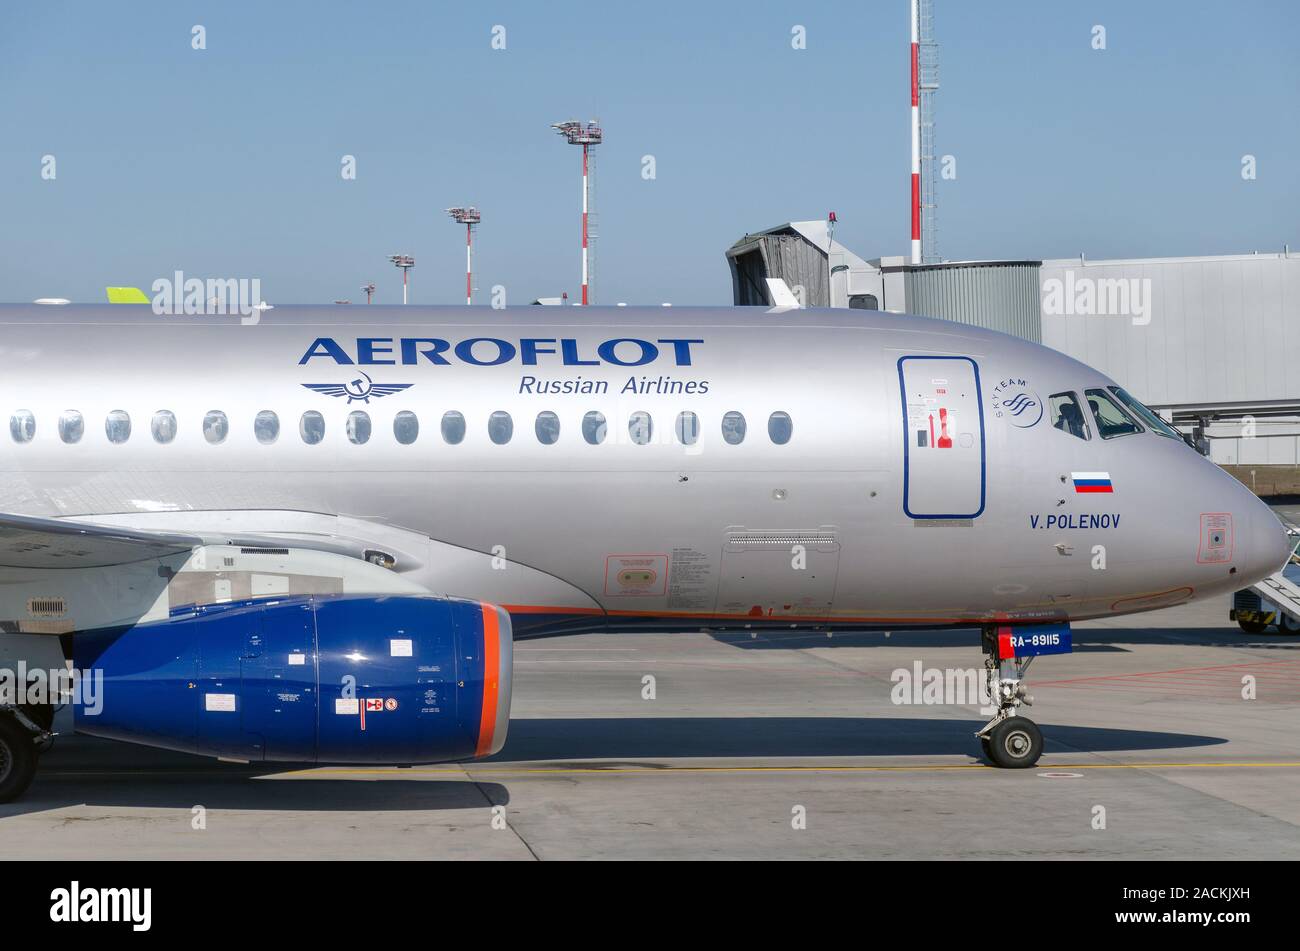 Die Nase des Flugzeugs der russischen Fluggesellschaft Aeroflot auf dem Vorfeld des Flughafens. Von der Seite. Russland, Rostow-am-Don, Platov Flughafen, 2019-04-10 Stockfoto